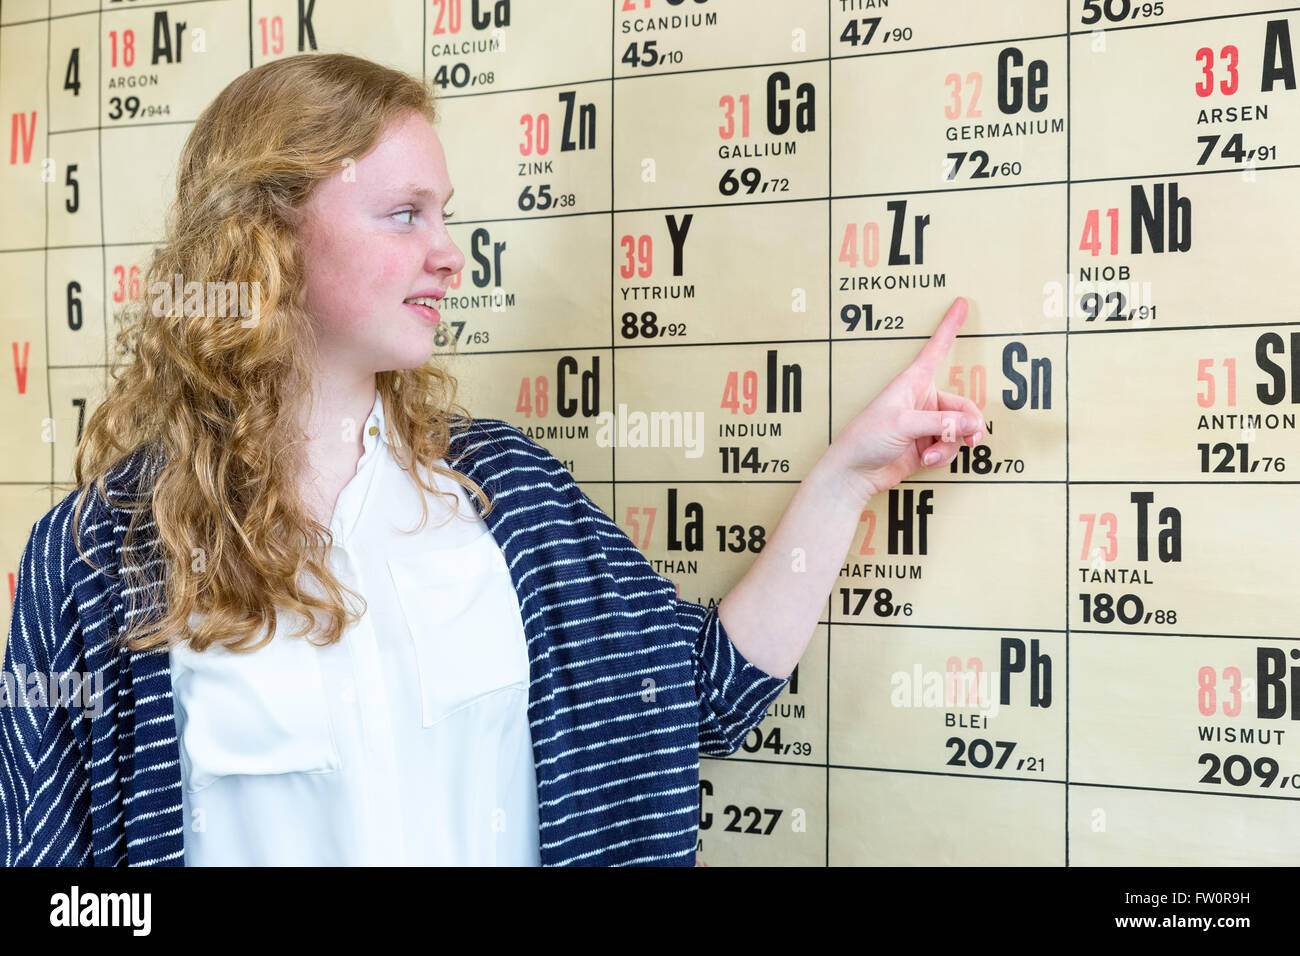 Élève de l'école européenne femelle pointant sur carte murale avec tableau périodique en leçon de chimie Banque D'Images